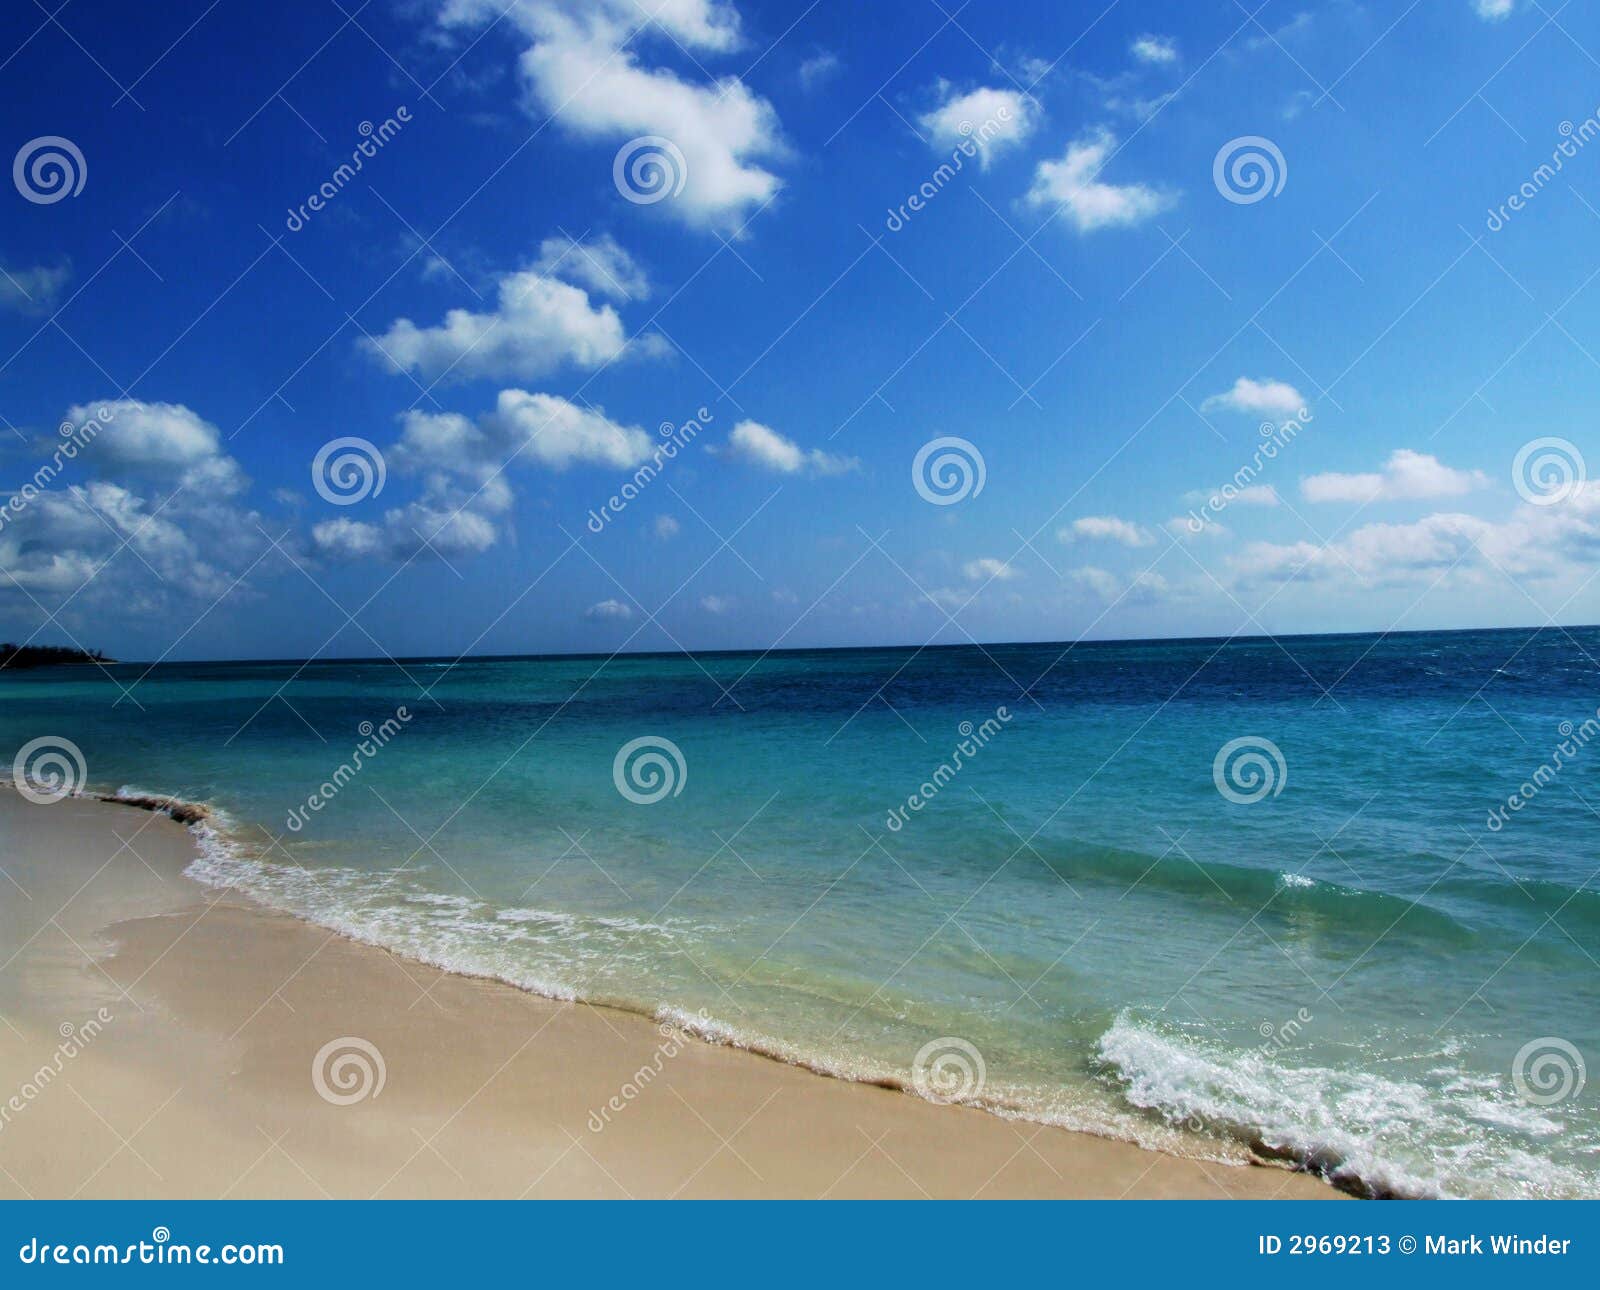 pristine beach - shoreline